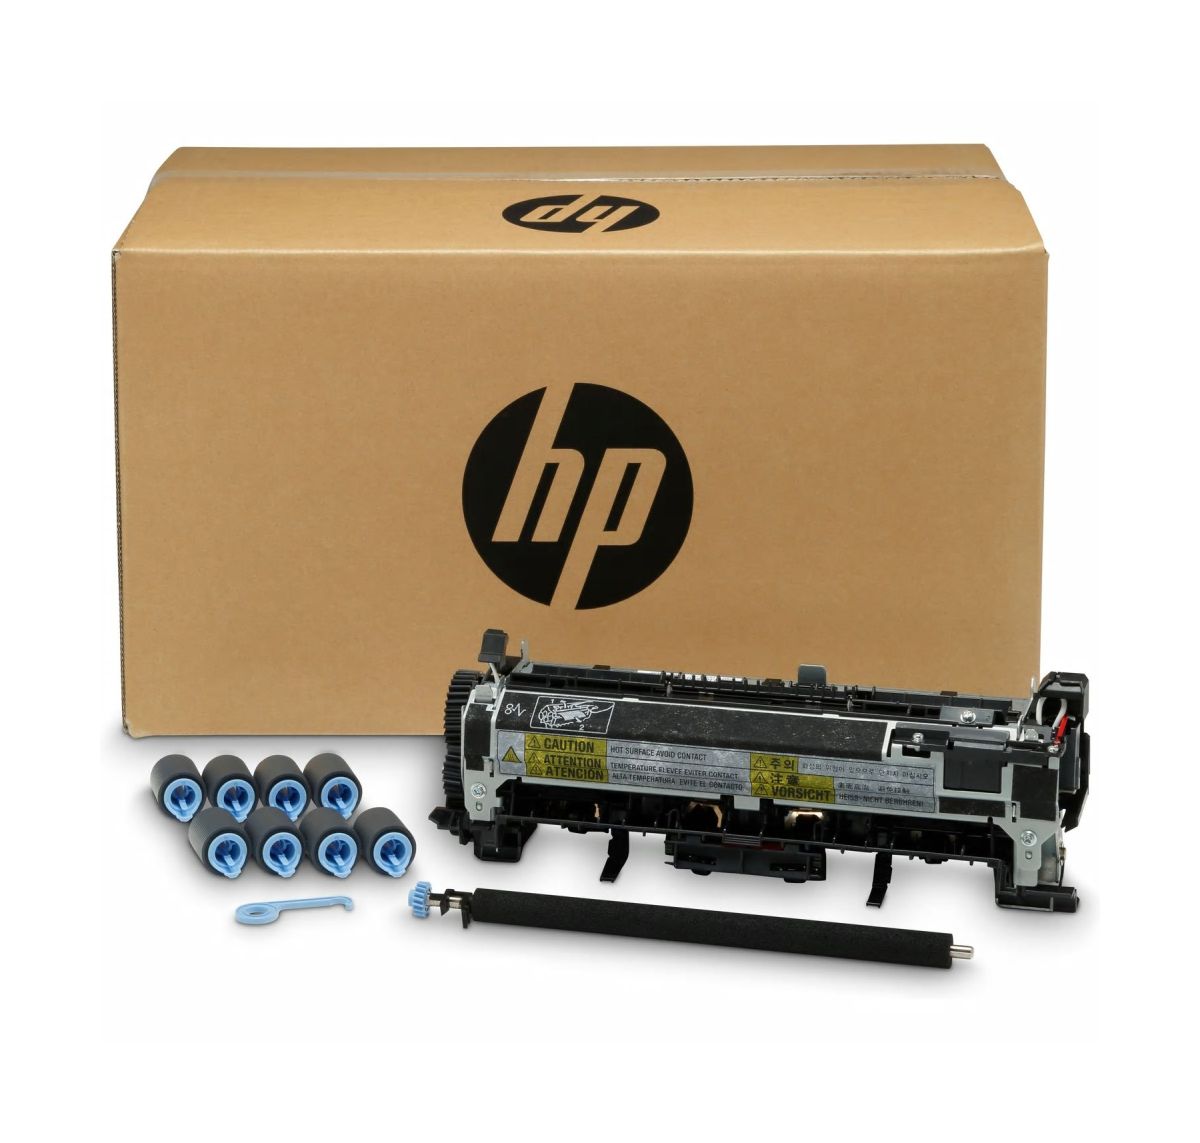 Sada pro údržbu HP LaserJet 220V B3M78A (B3M78A)